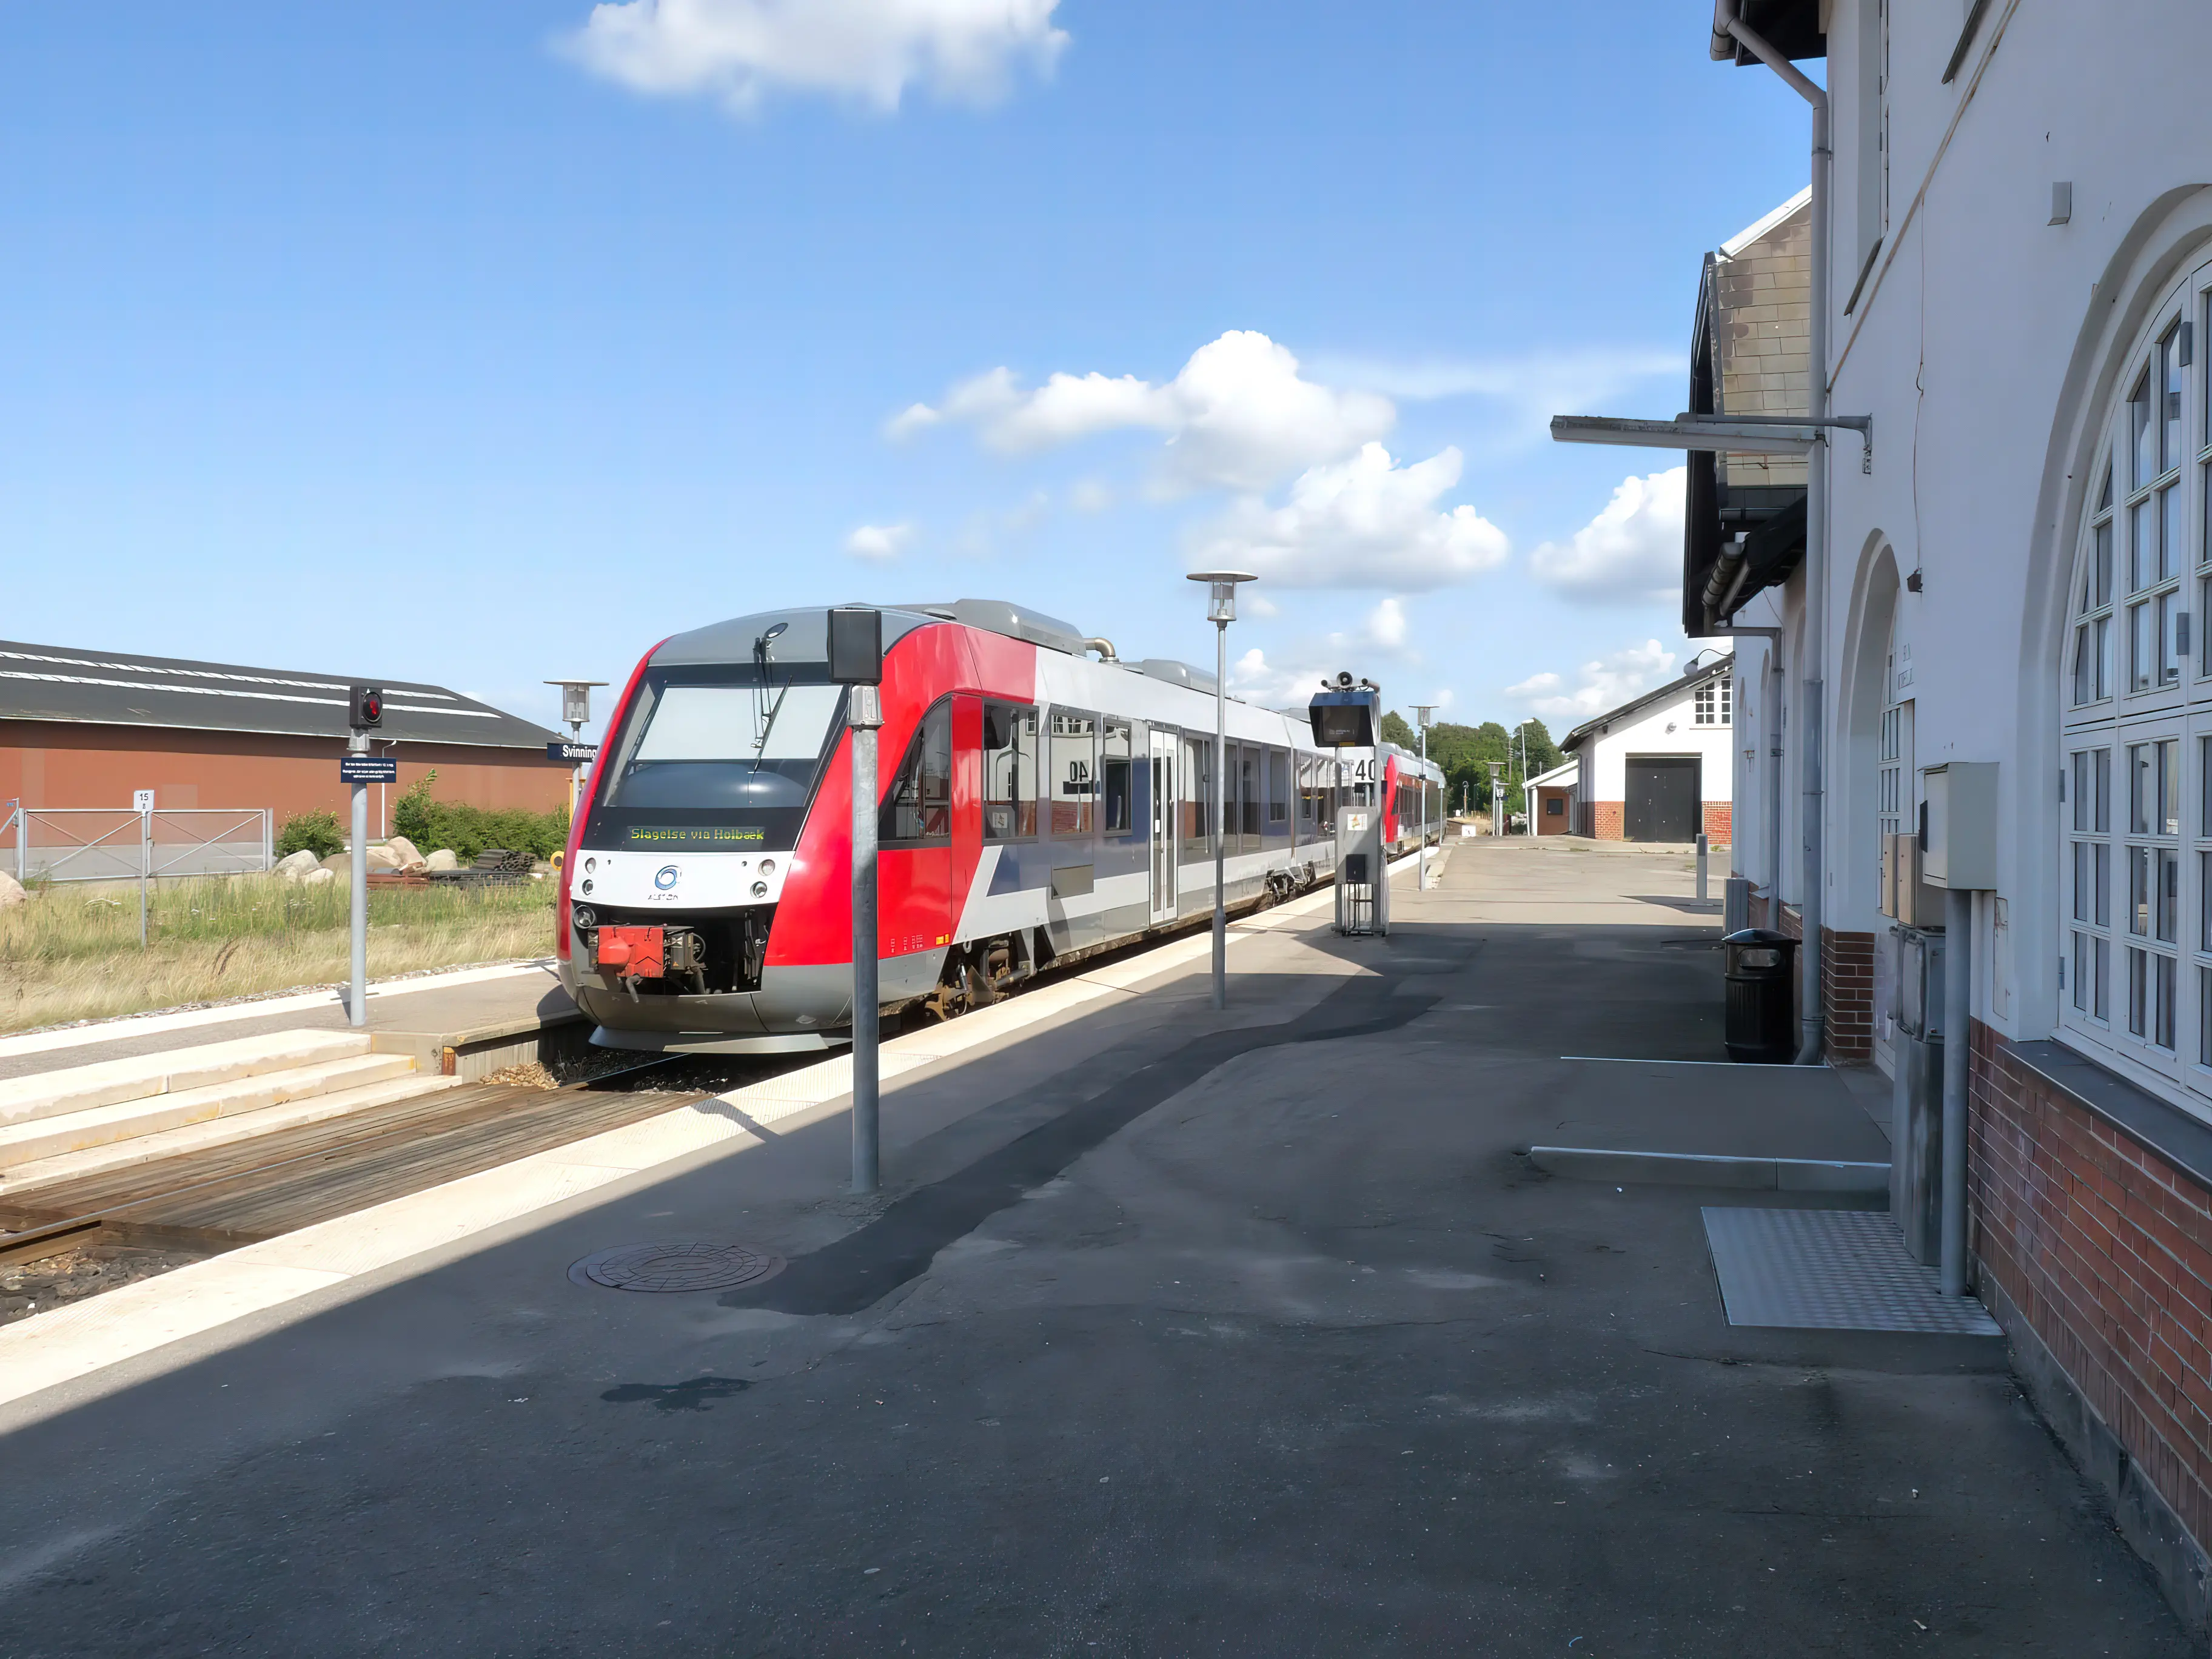 Billede af tog ud for Svinninge Station.